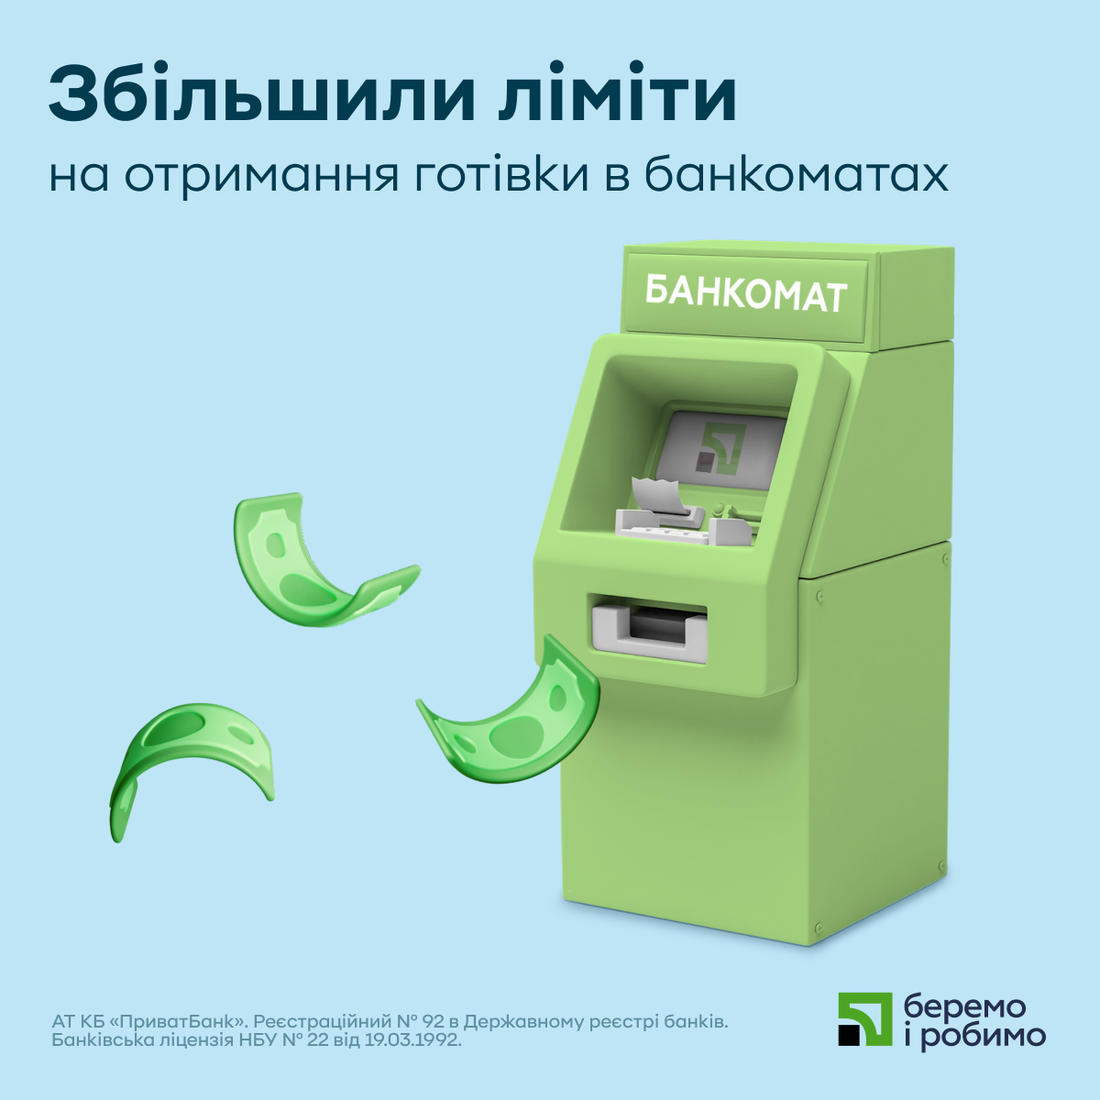 ПриватБанк збільшив ліміти на отримання готівки в банкоматах - яку суму можна зняти за раз